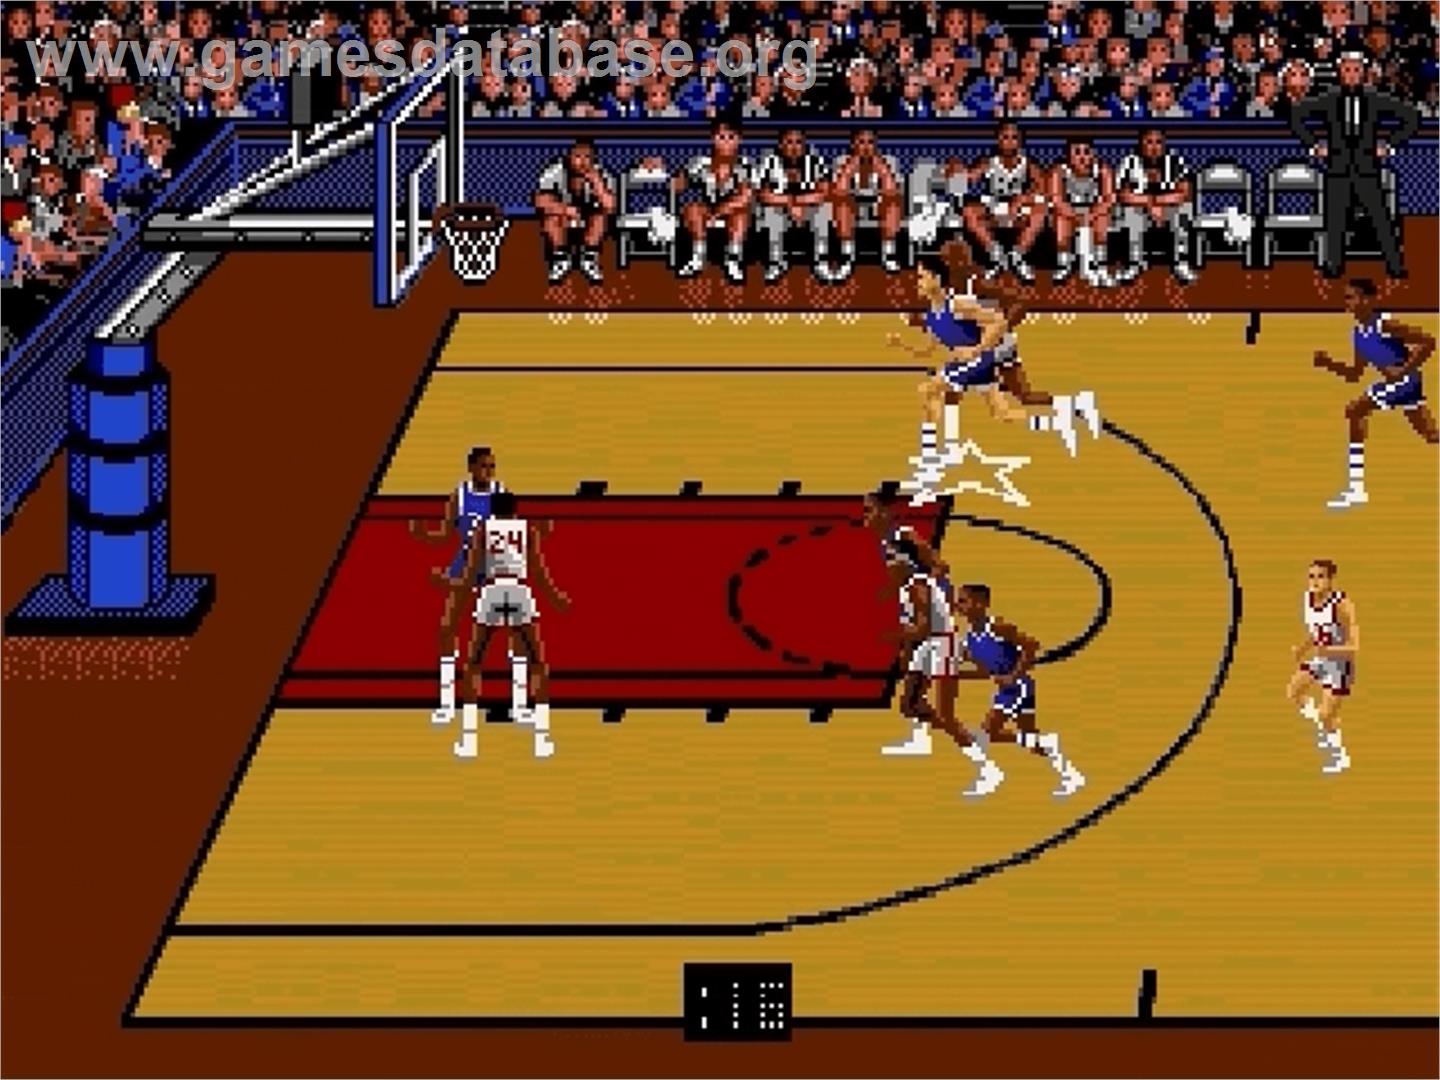 Bulls vs. Lakers and the NBA Playoffs - Sega Genesis - Artwork - In Game